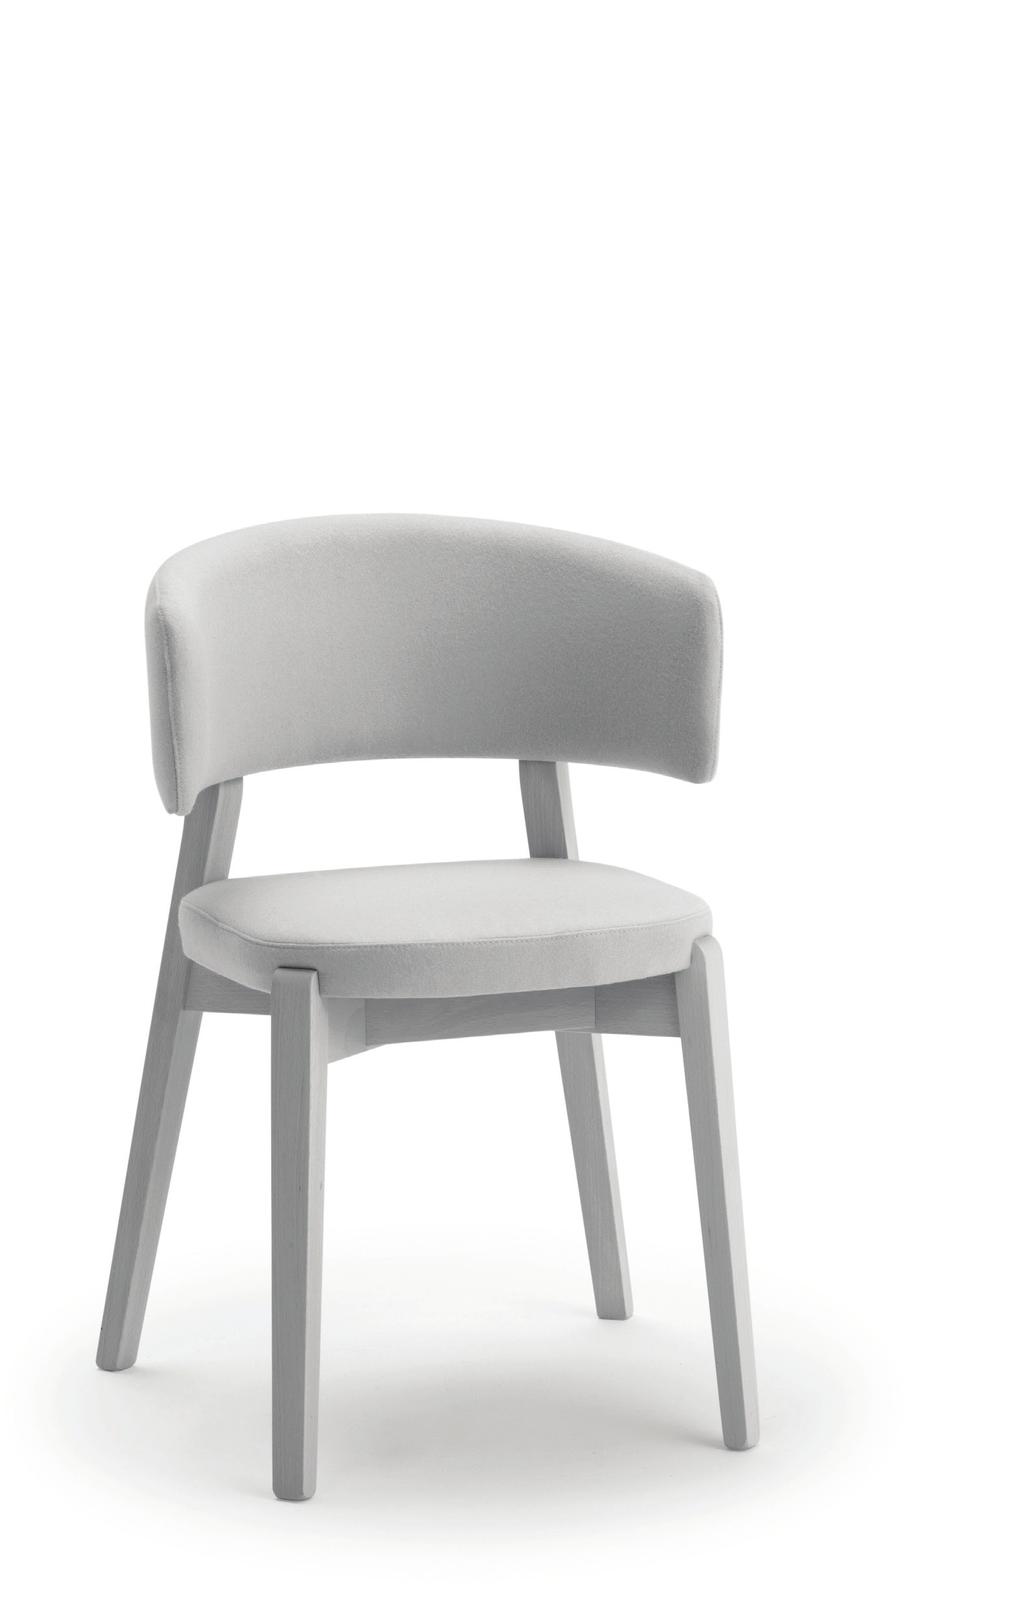 96 WAIT Židle z masivního dřeva / Solid wood chairs / Stuhl aus Massivholz Čalouněný sedák a celočalouněné tvarované /